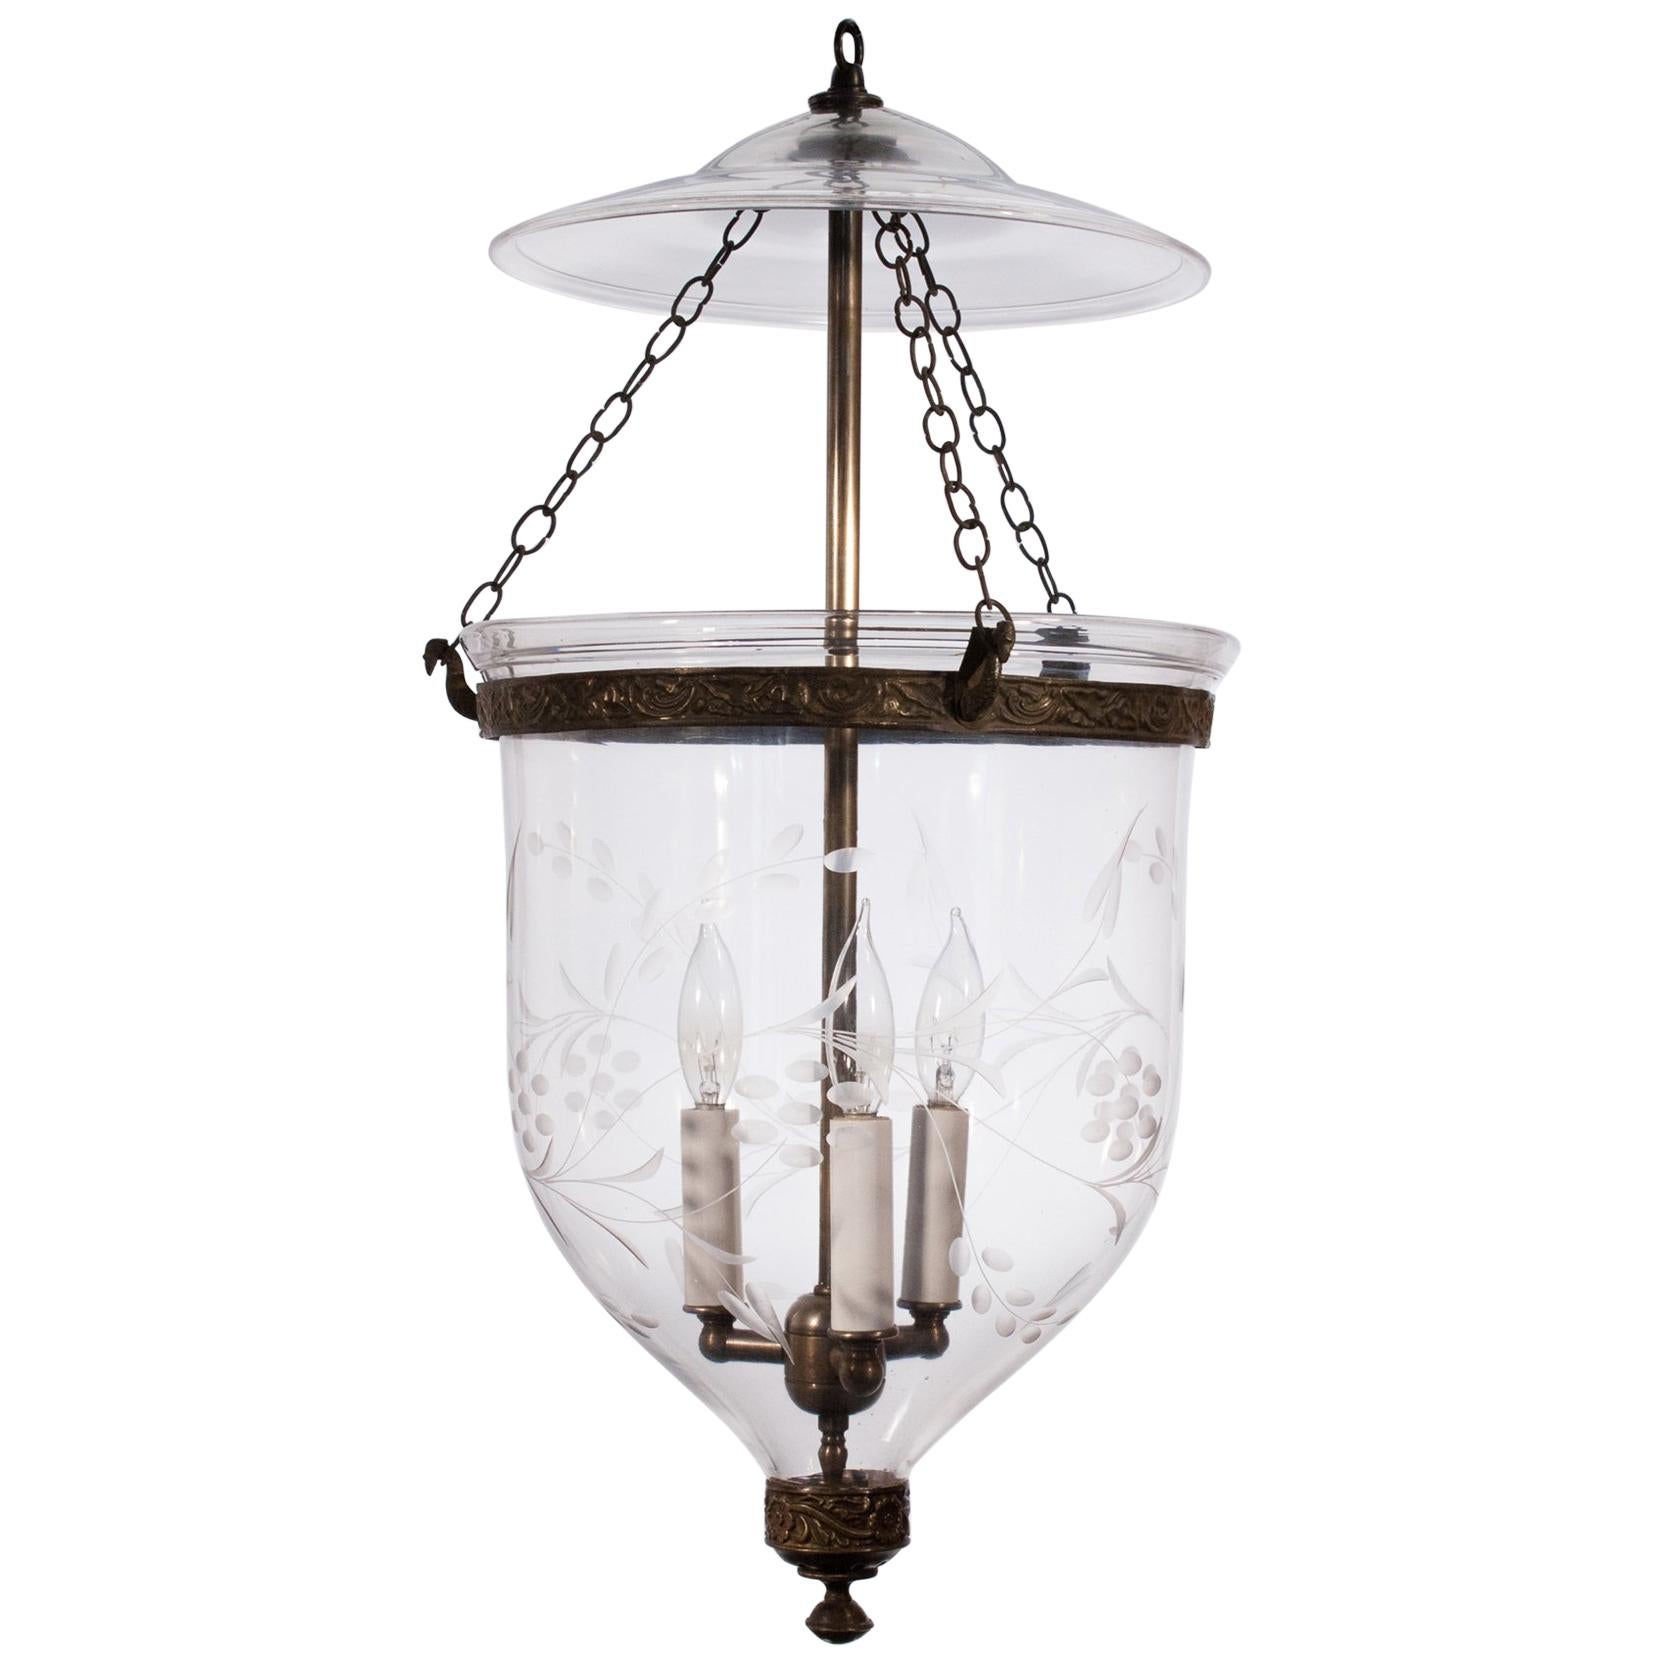  Antique Bell Jar Lantern with Vine Etching